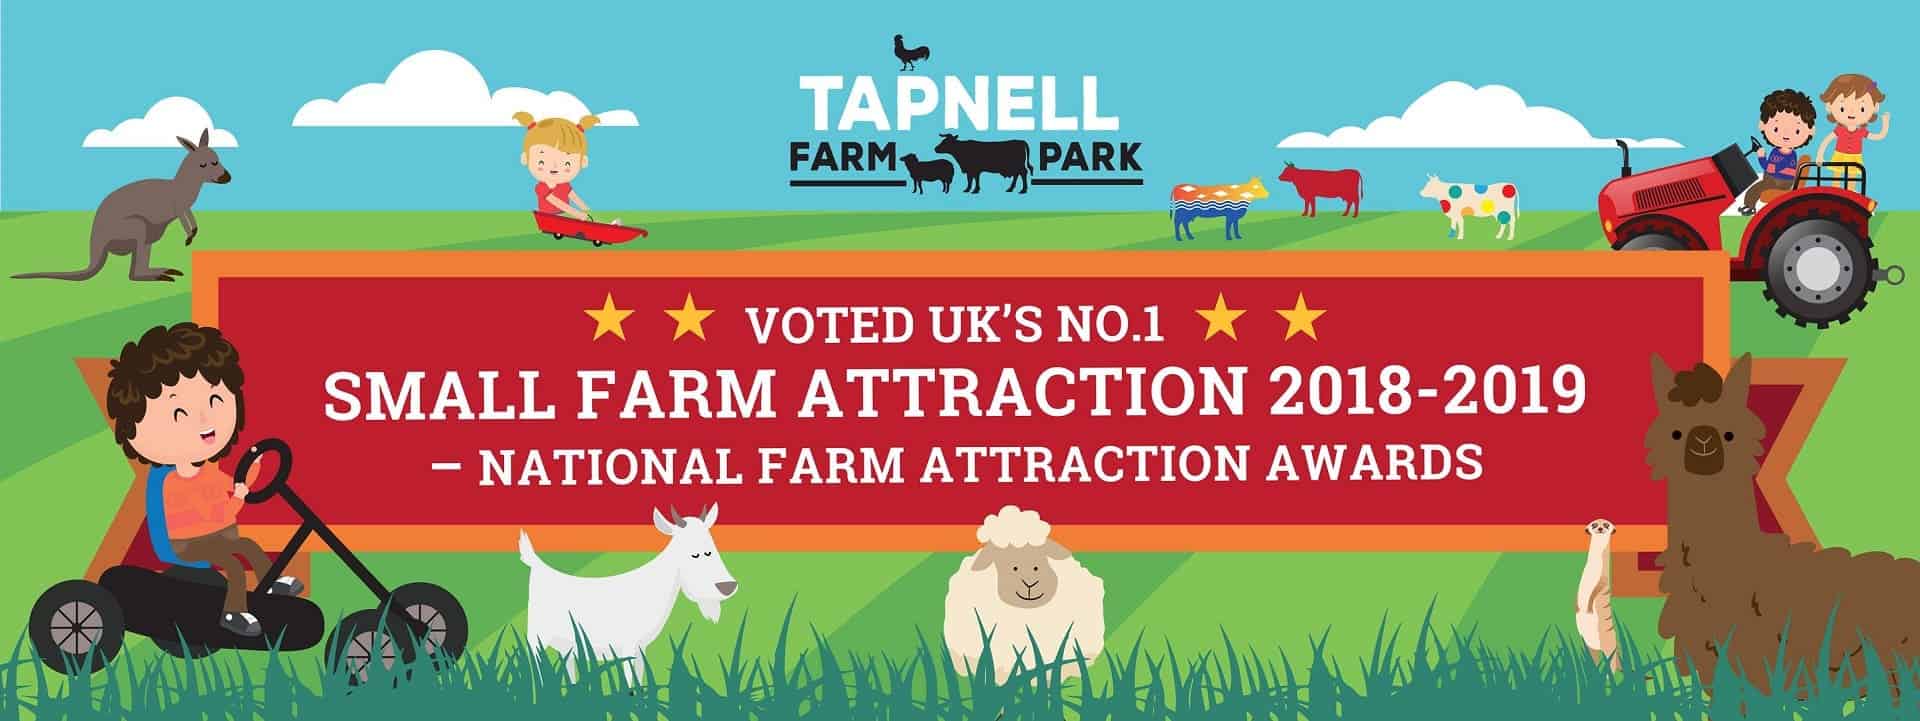 Tapnell Farm Park in UK